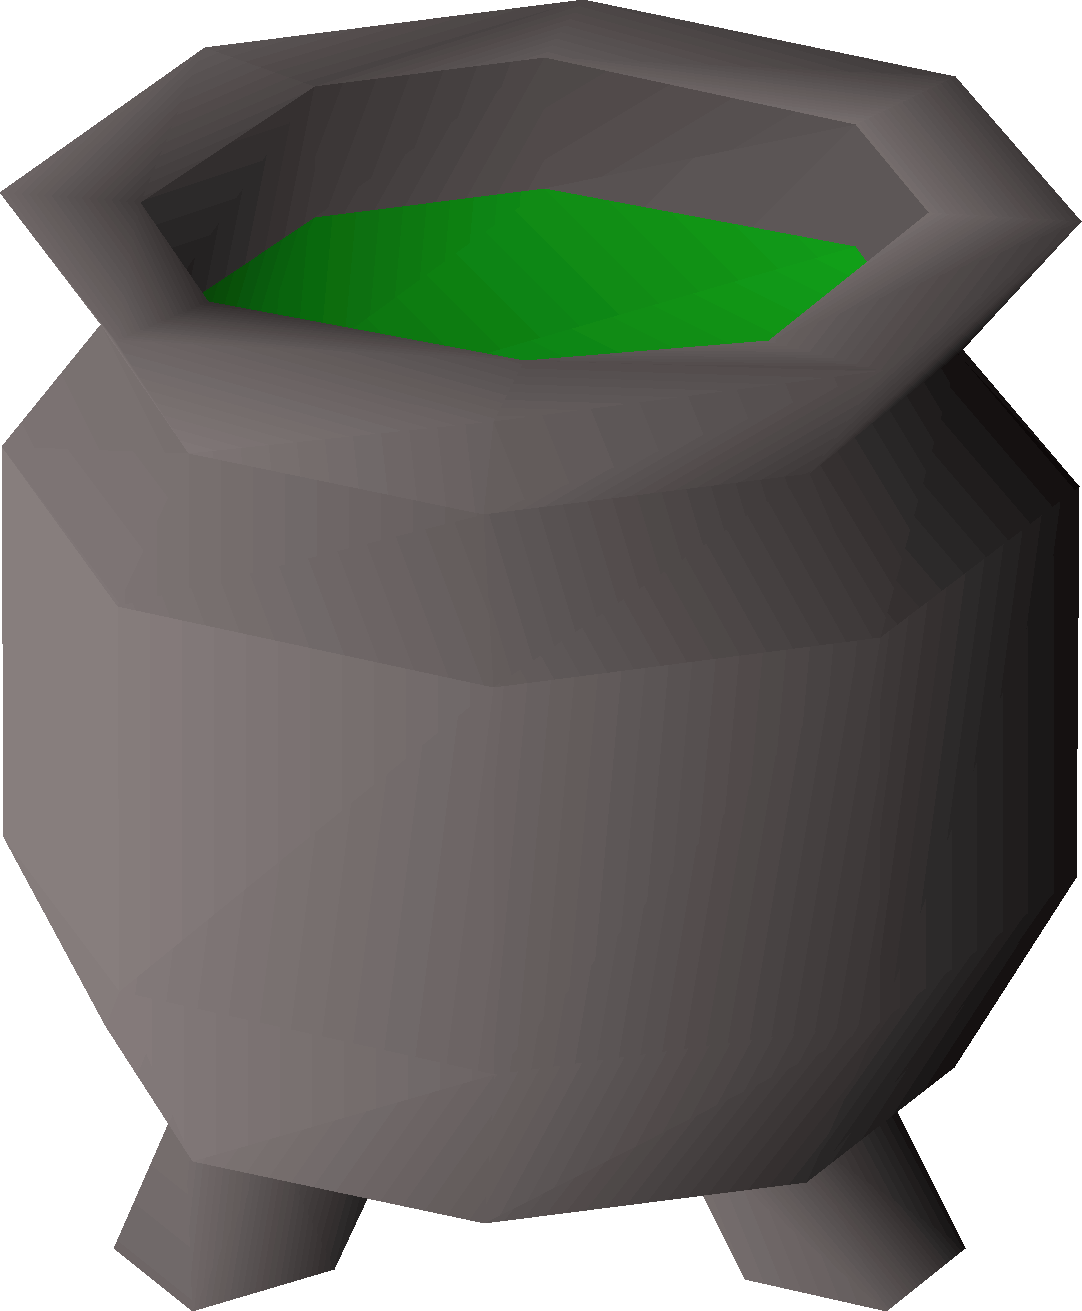 A Cartoon Of A Pot Of Green Liquid